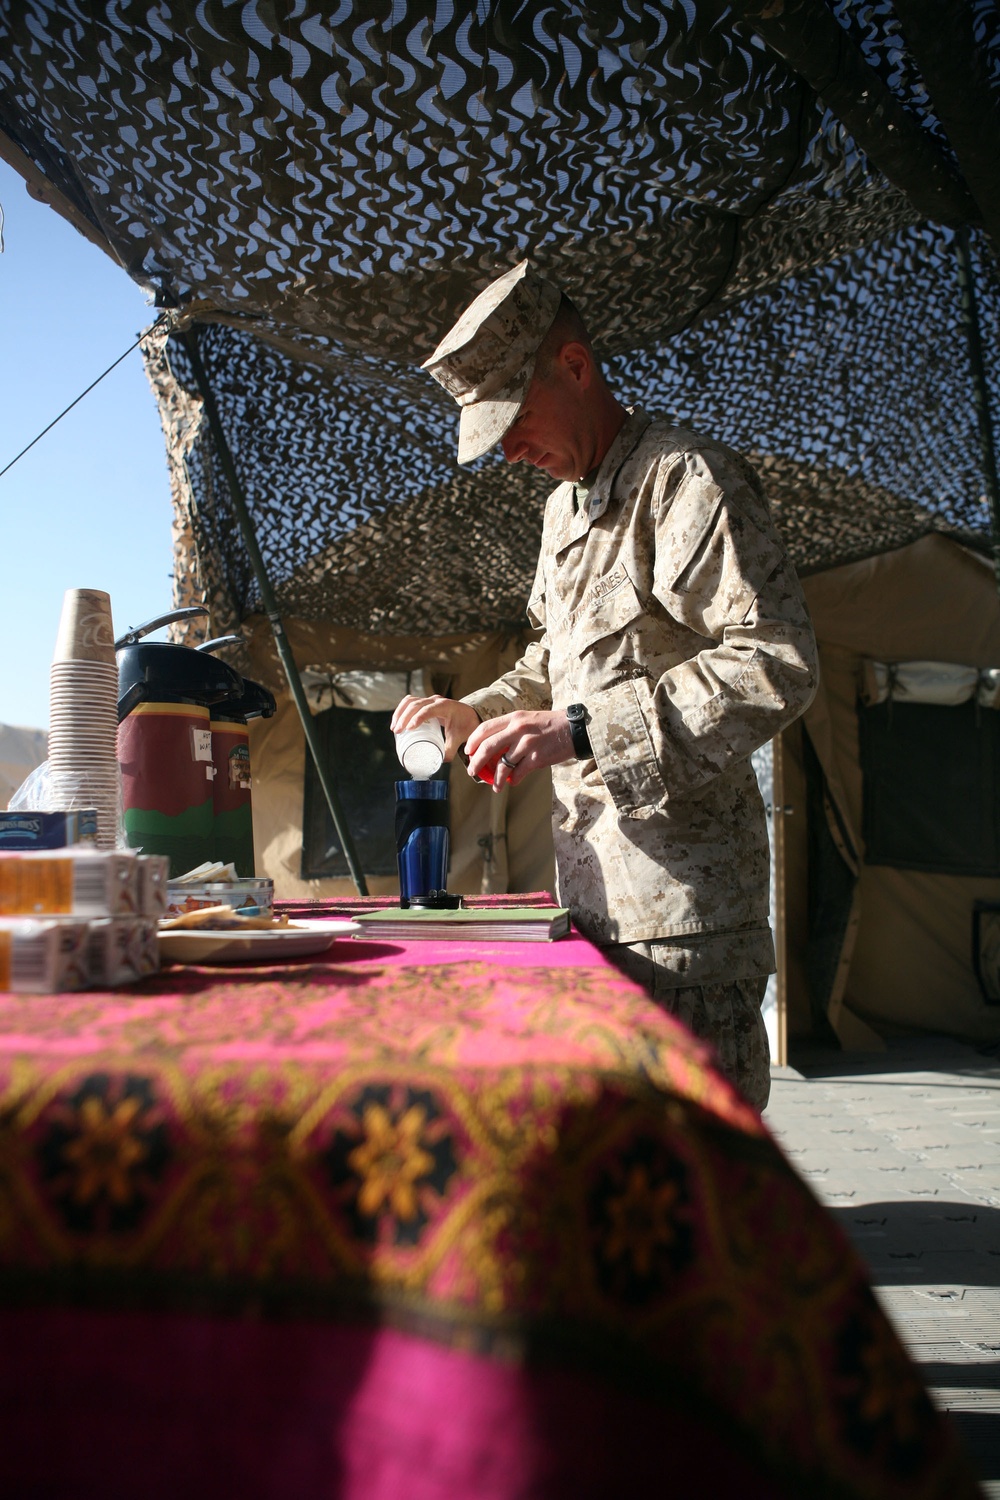 Service members enjoy simple pleasures in southern Afghanistan